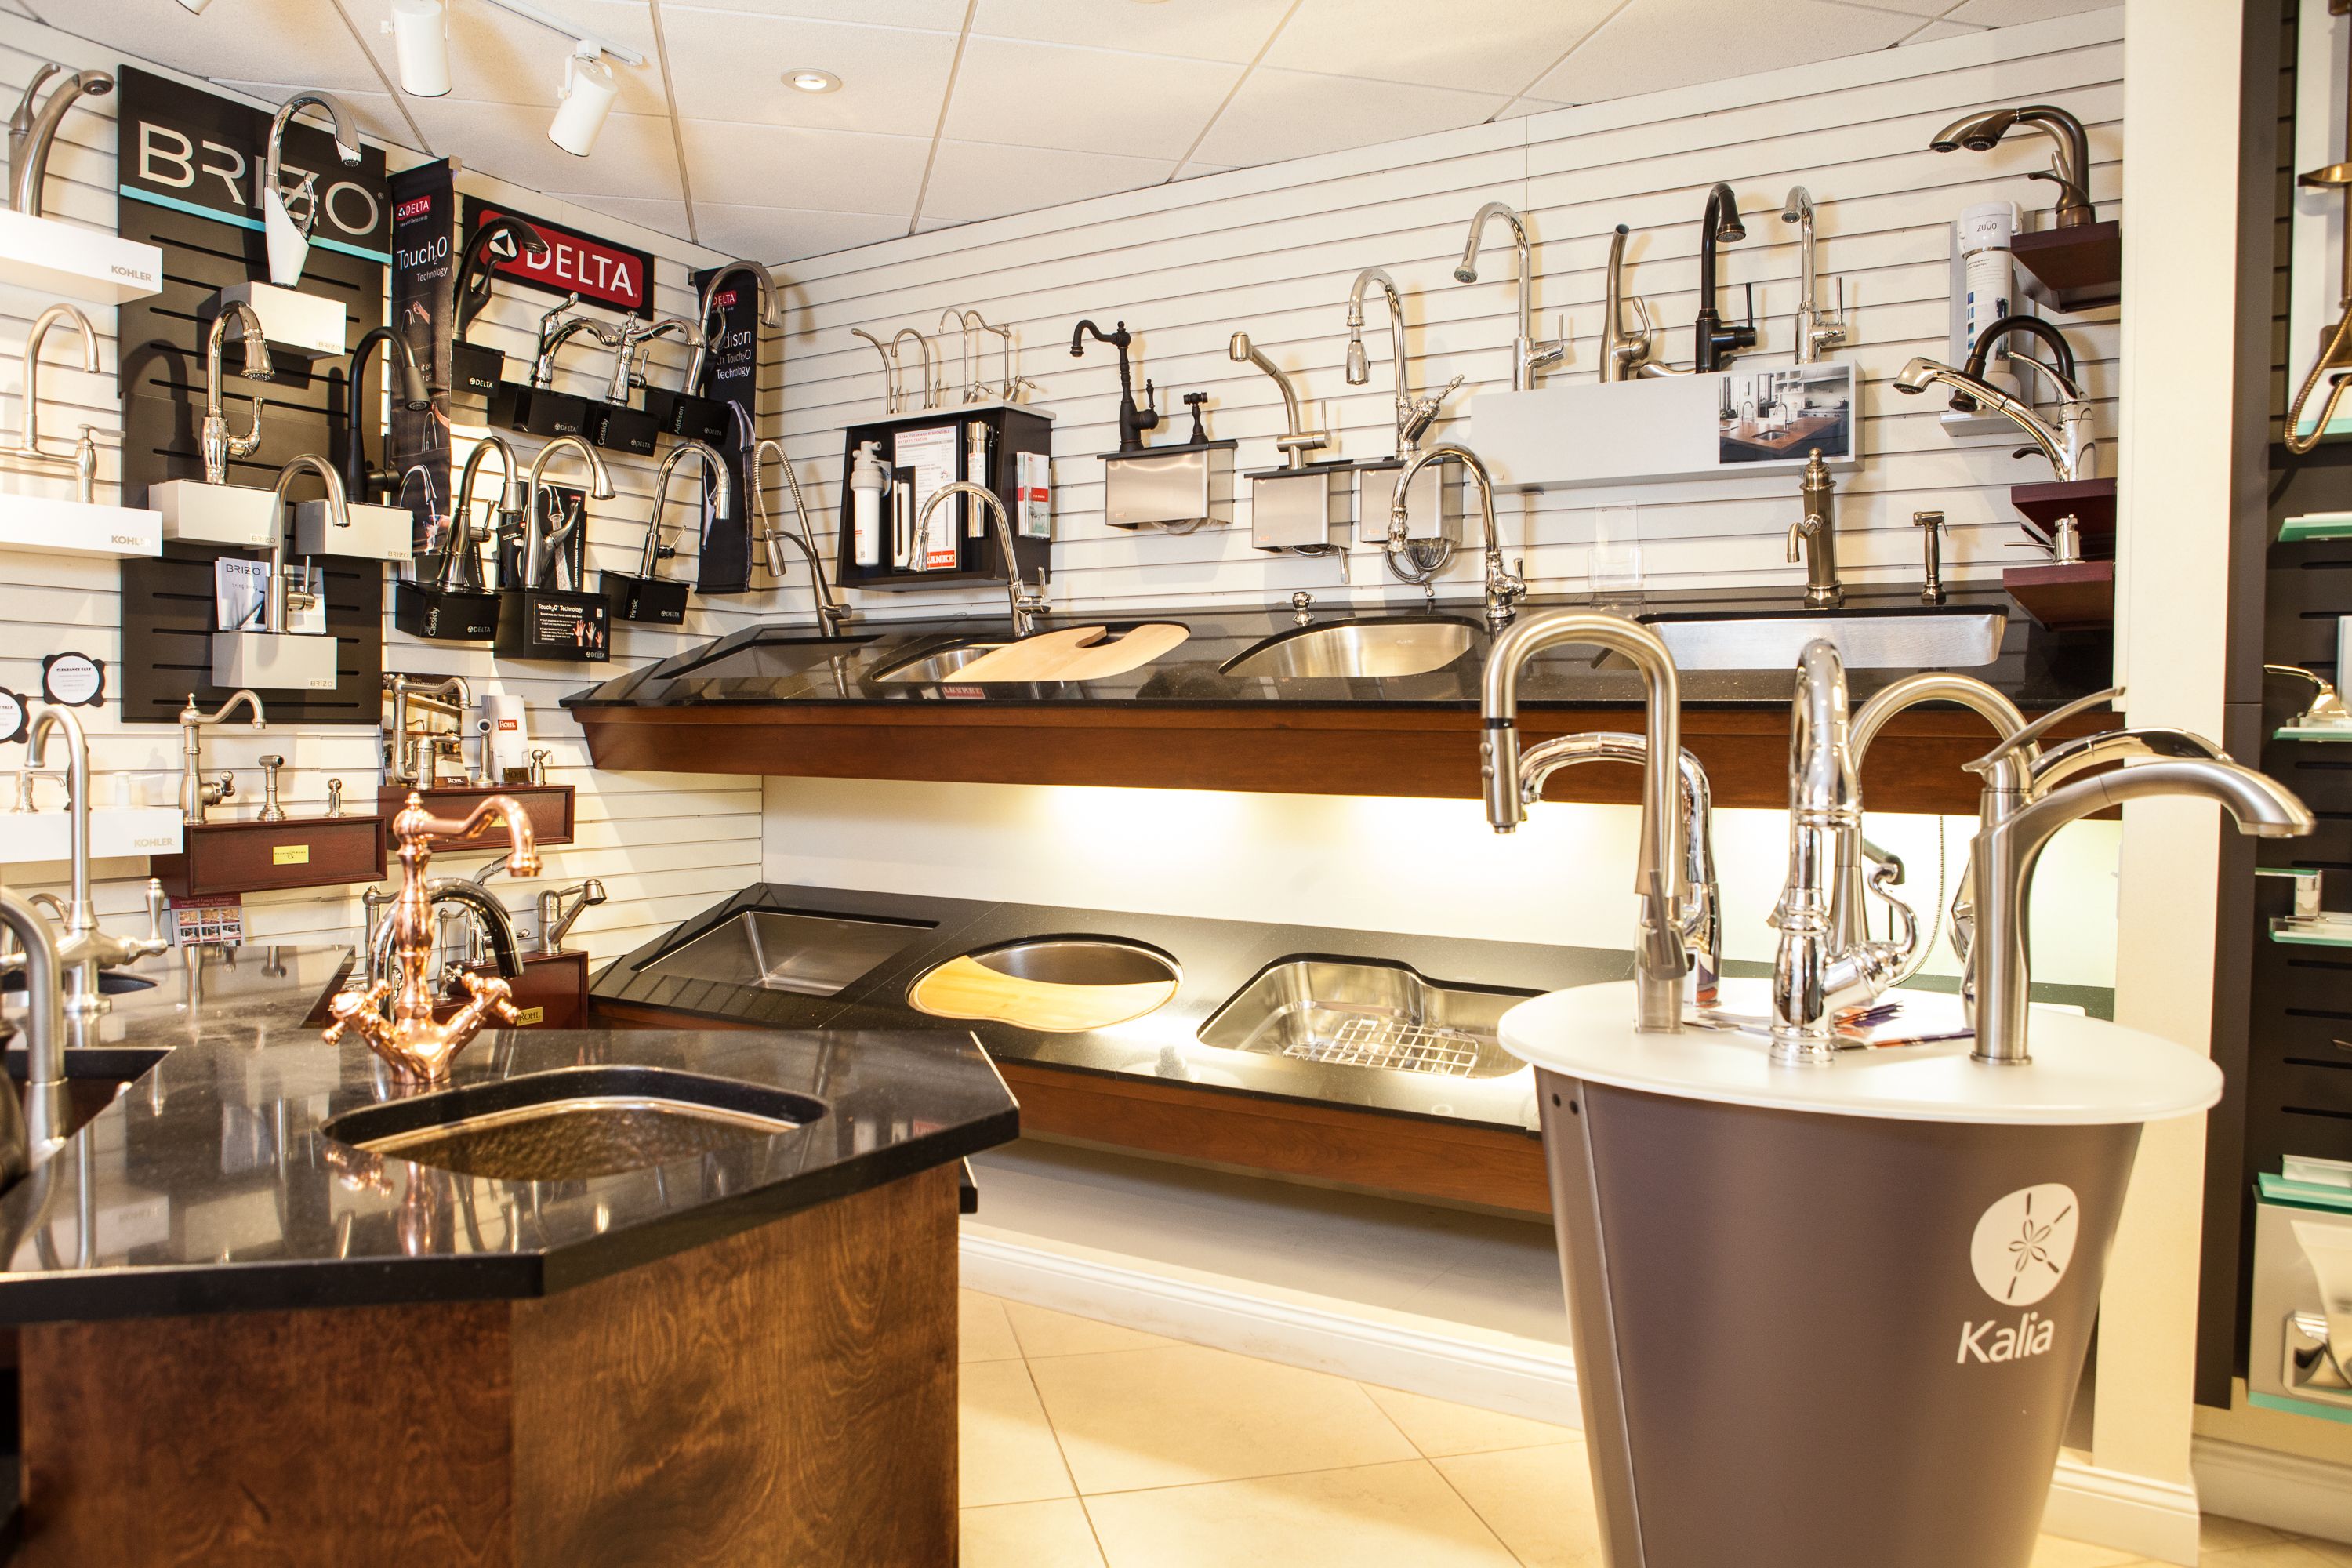 Kalia sinks in showroom | Skippack PA bath and kitchen showroom | Weinstein Collegeville